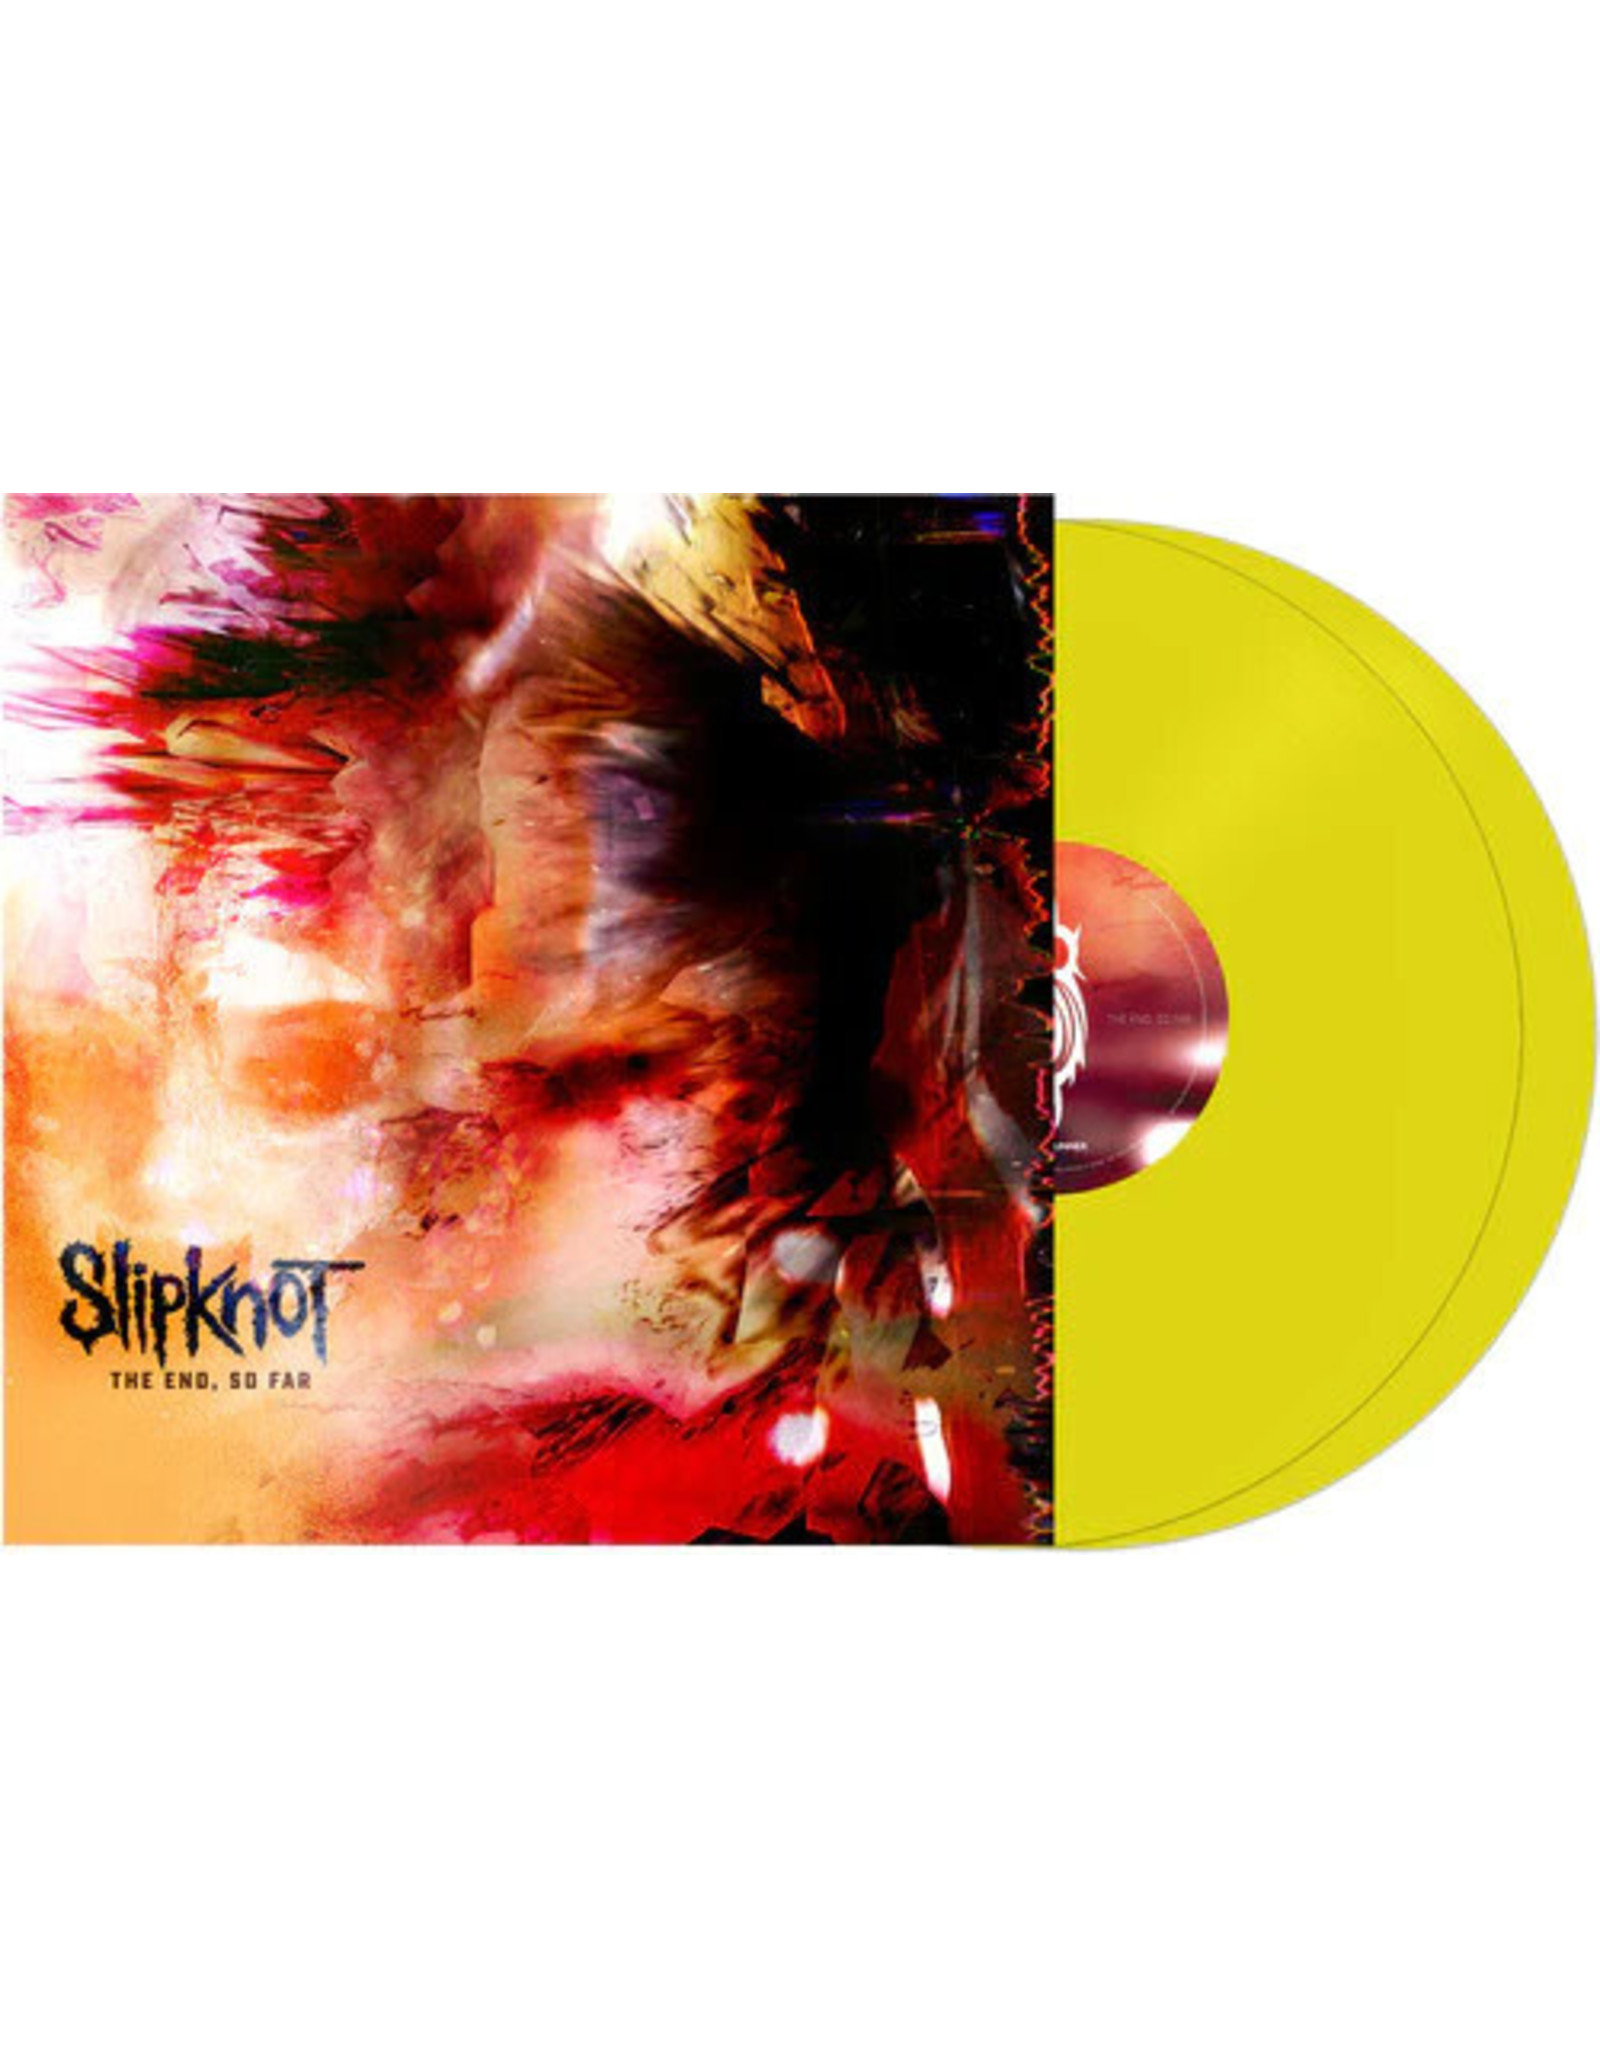 Roadrunner Slipknot: The End, So Far LP